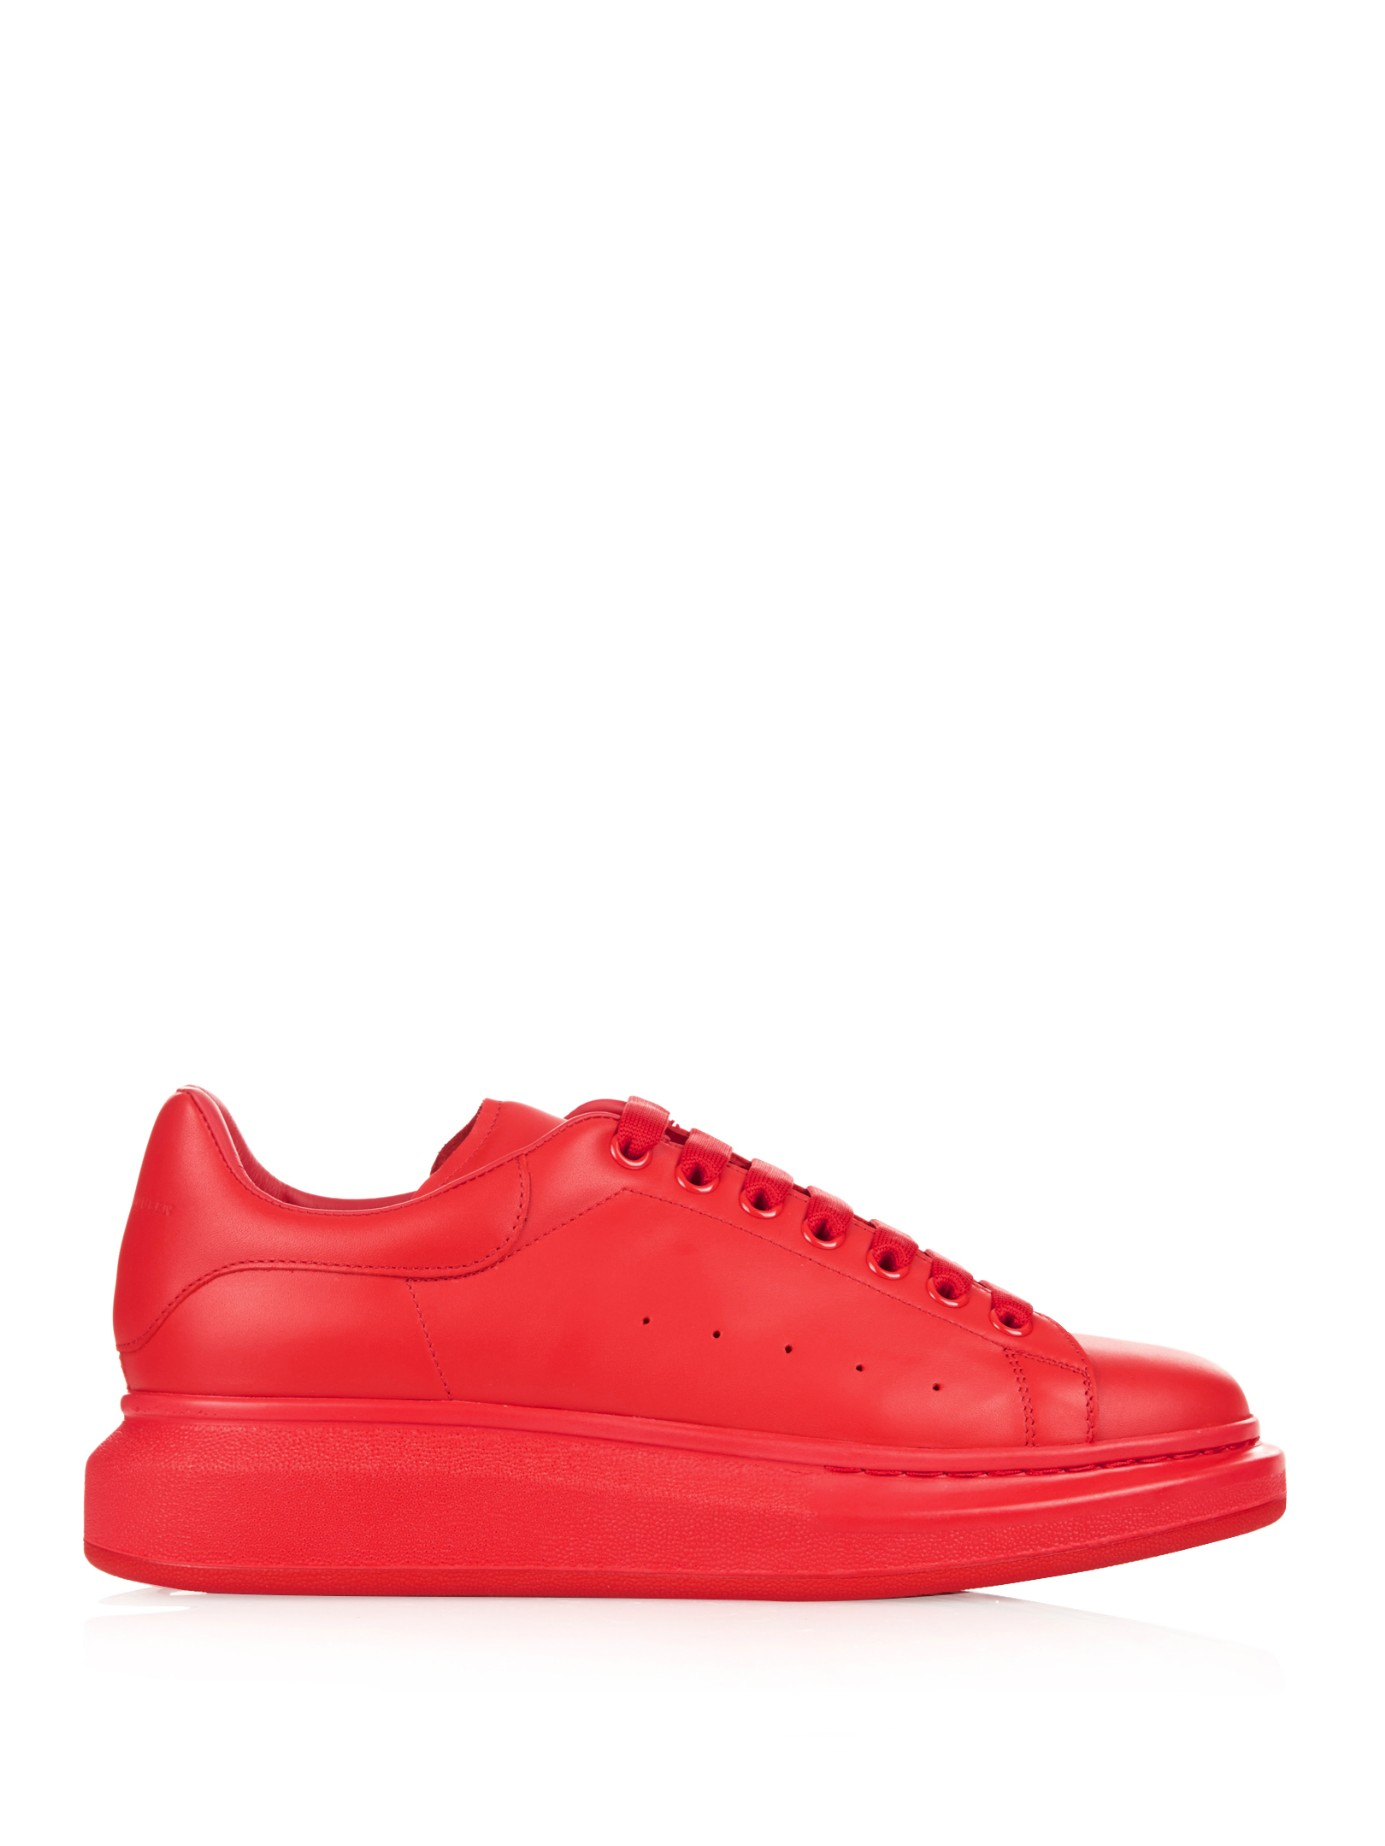 Alexander McQueen Larry Platform Leather Low-Top Sneakers in Red for Men -  Lyst